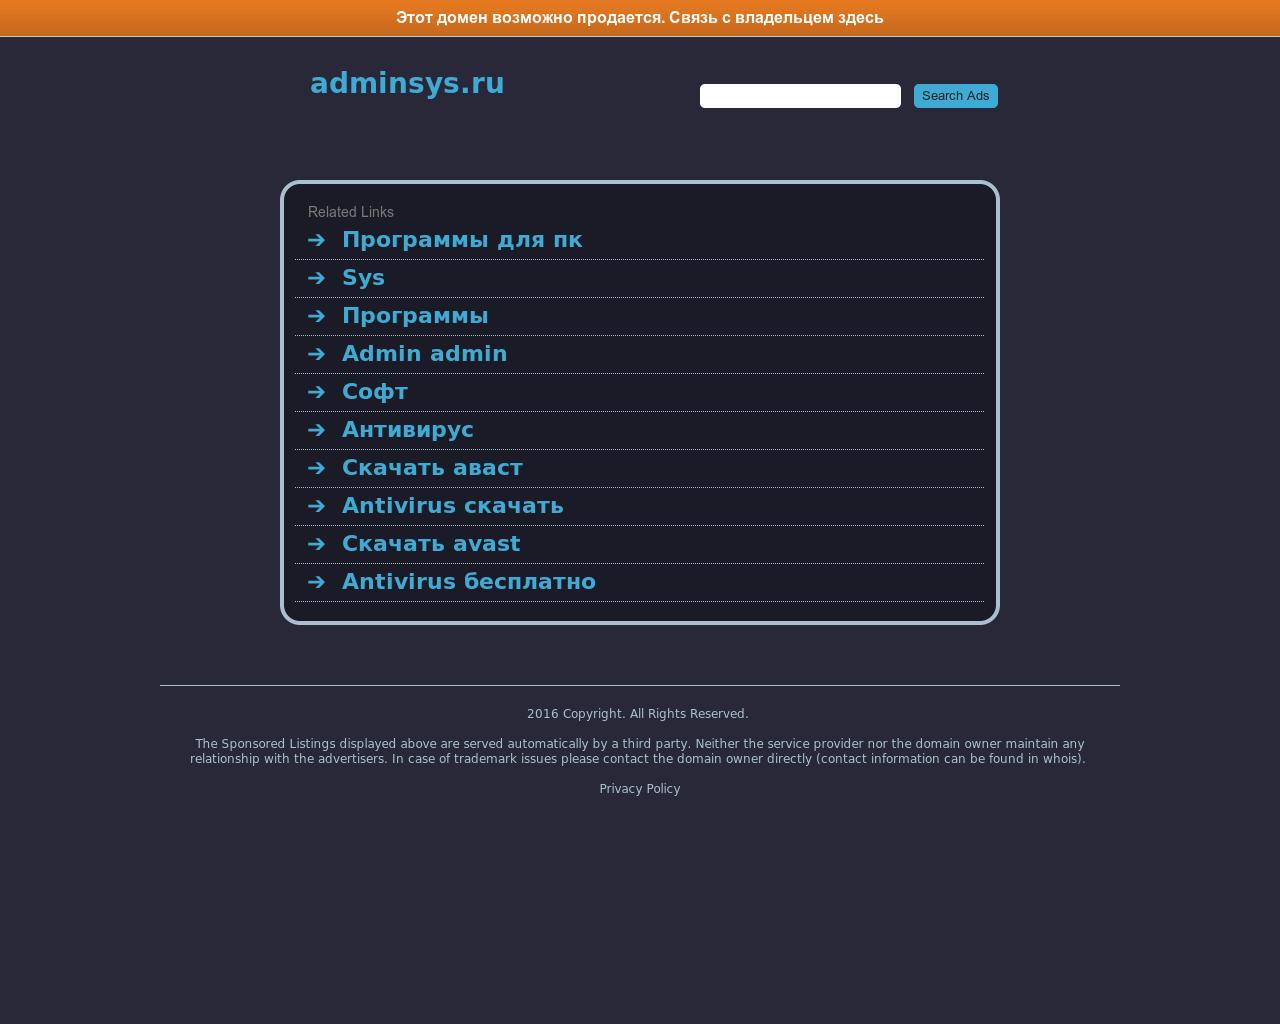 Изображение сайта adminsys.ru в разрешении 1280x1024